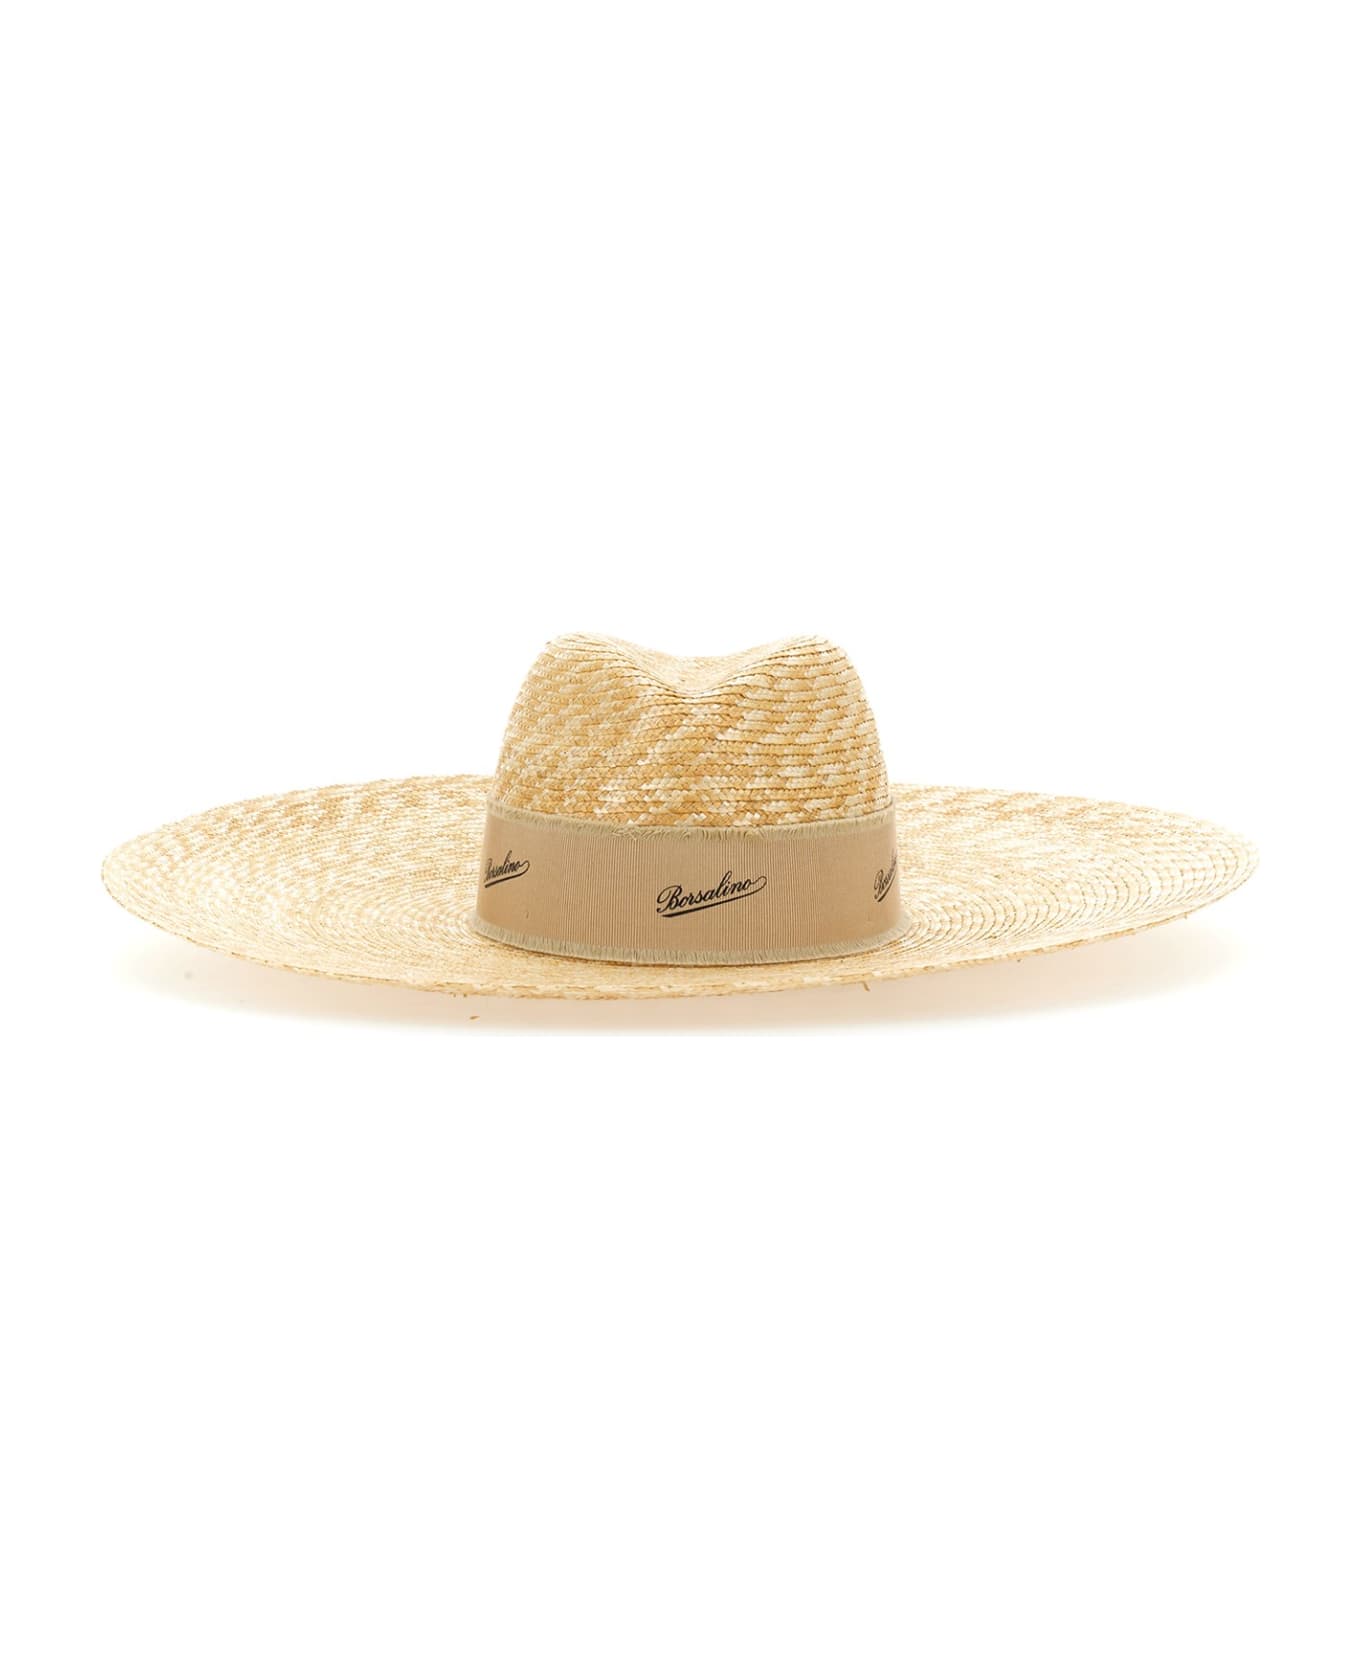 Borsalino Straw Hat - Naturale